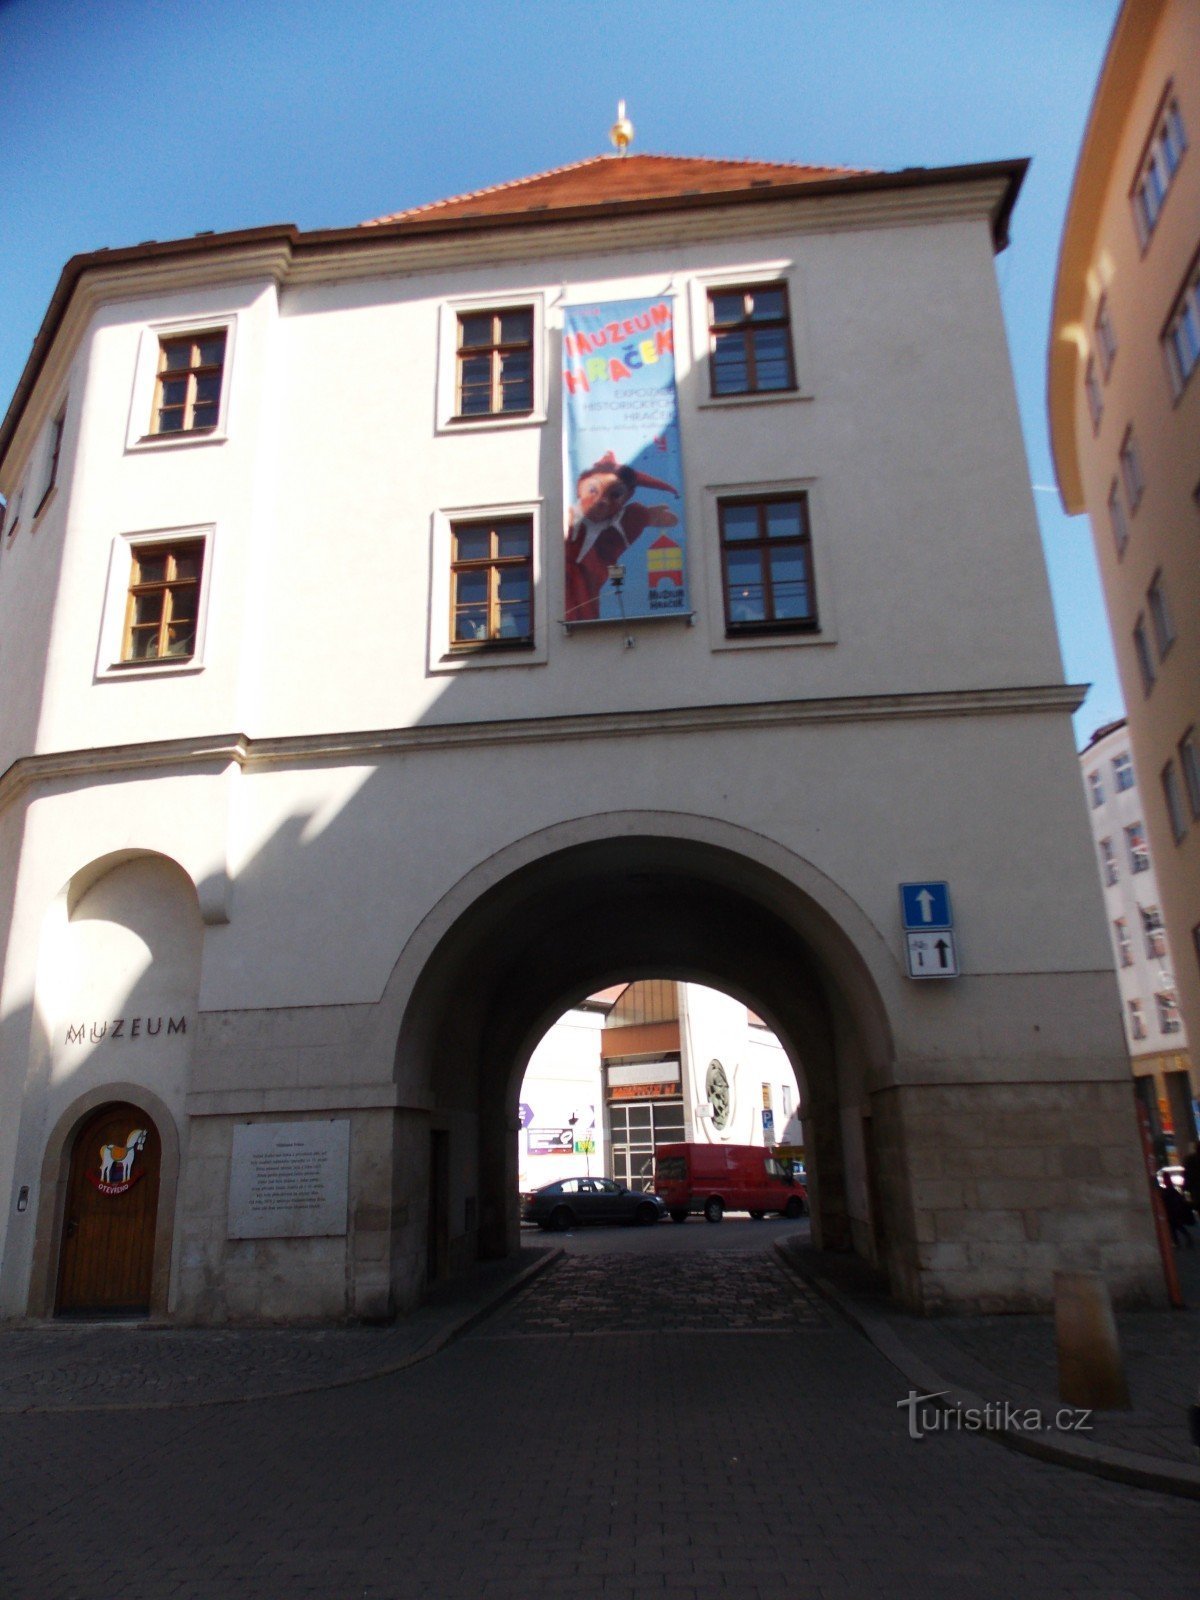 Poarta Měnín din centrul orașului Brno